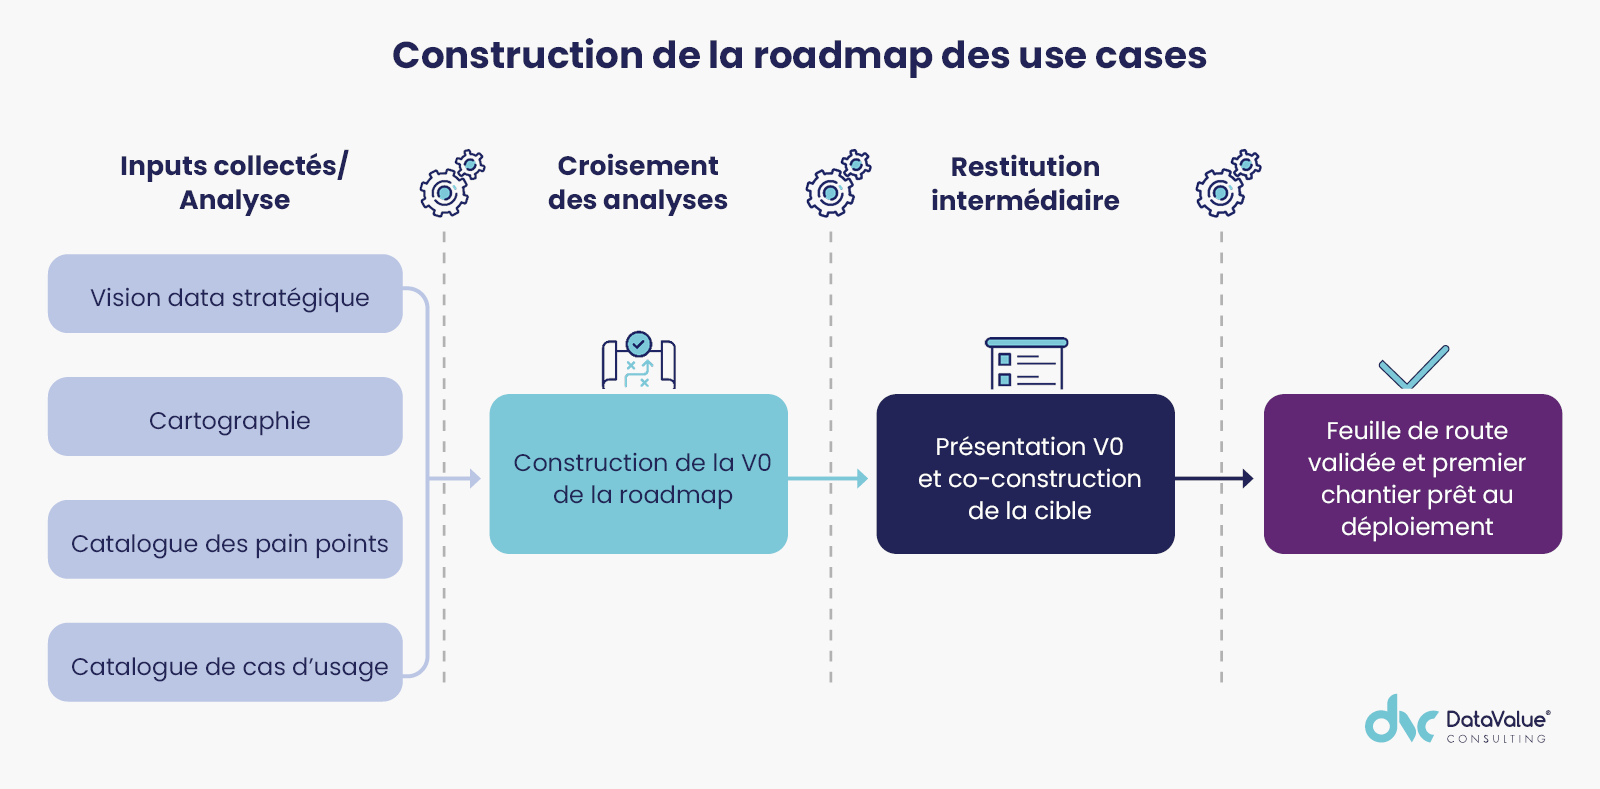 Construction de la roadmap des use cases